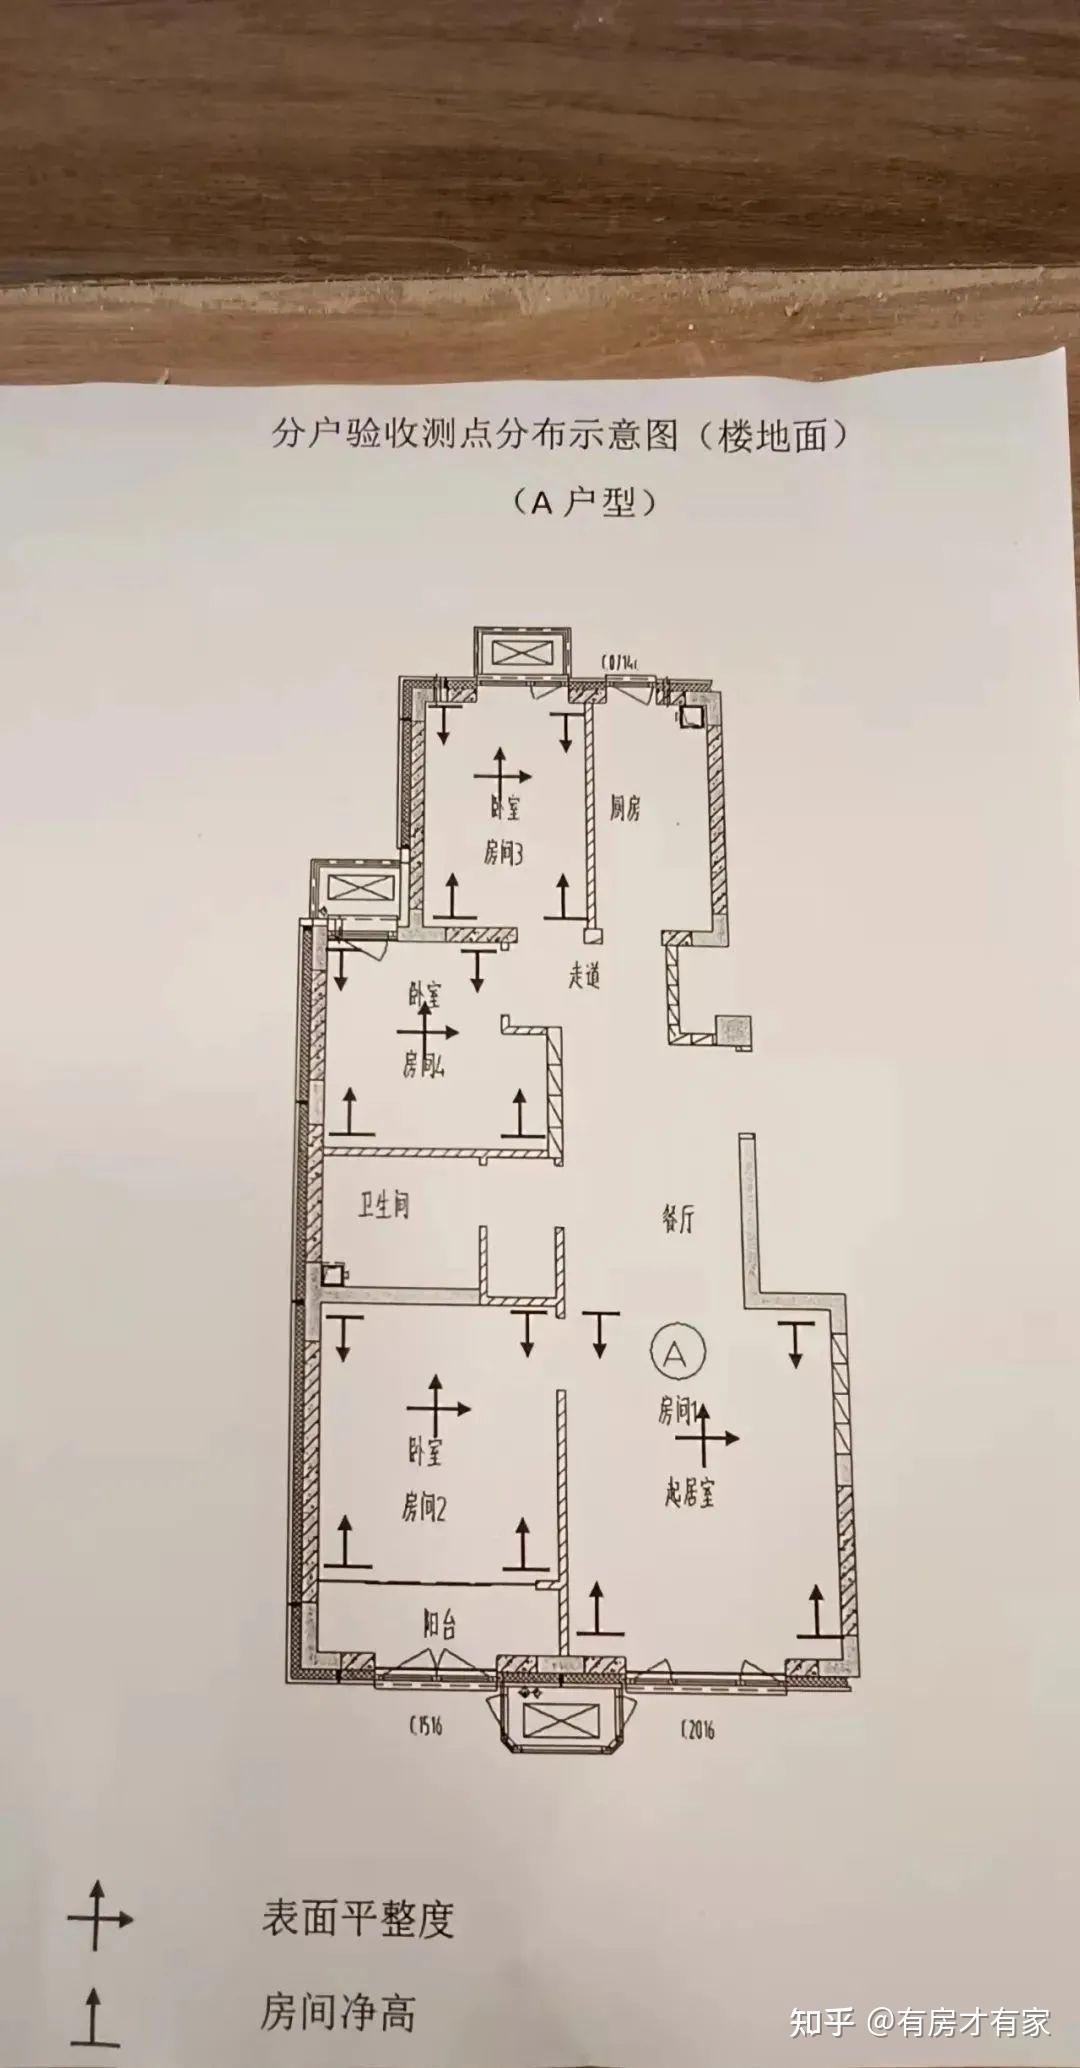 瑞晖嘉苑房家2021年11月20日十次实地踩盘播报施工进展